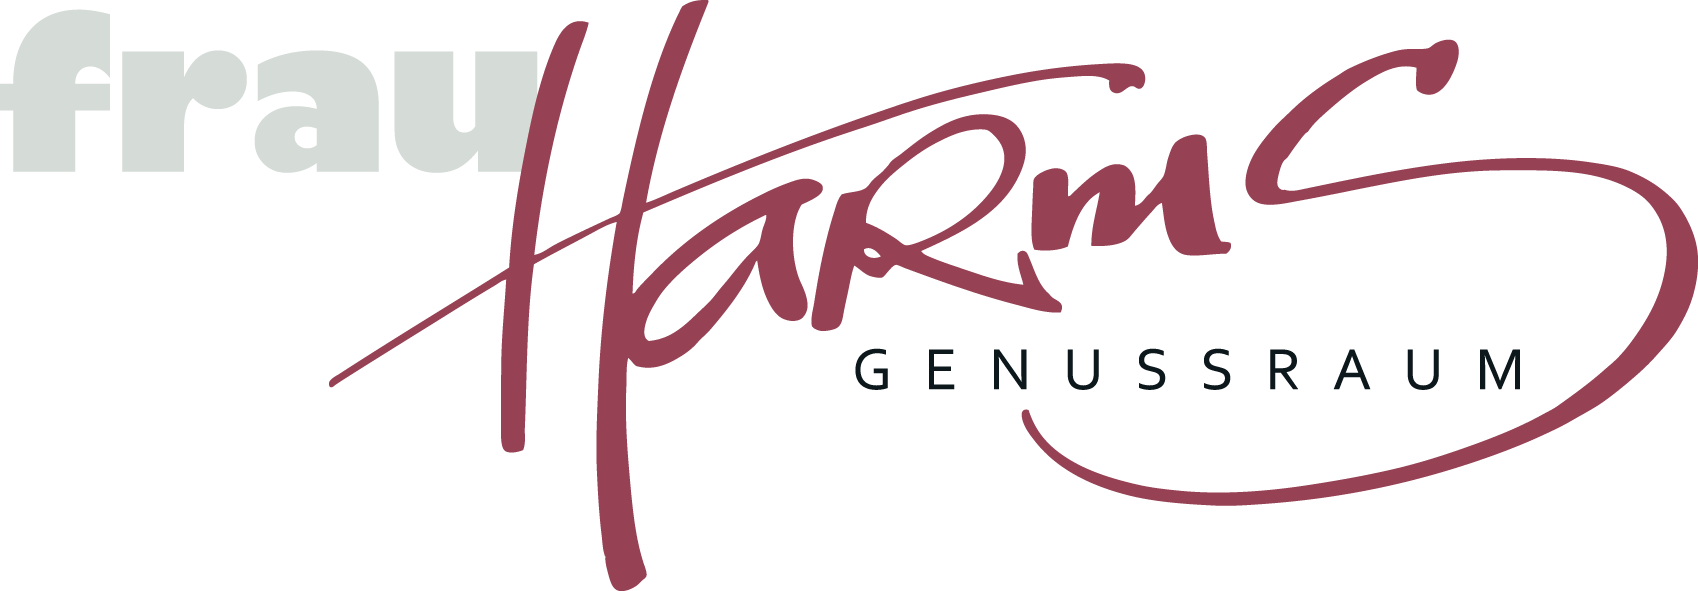 Harms-Genusshandwerkerei-Logo-png.png